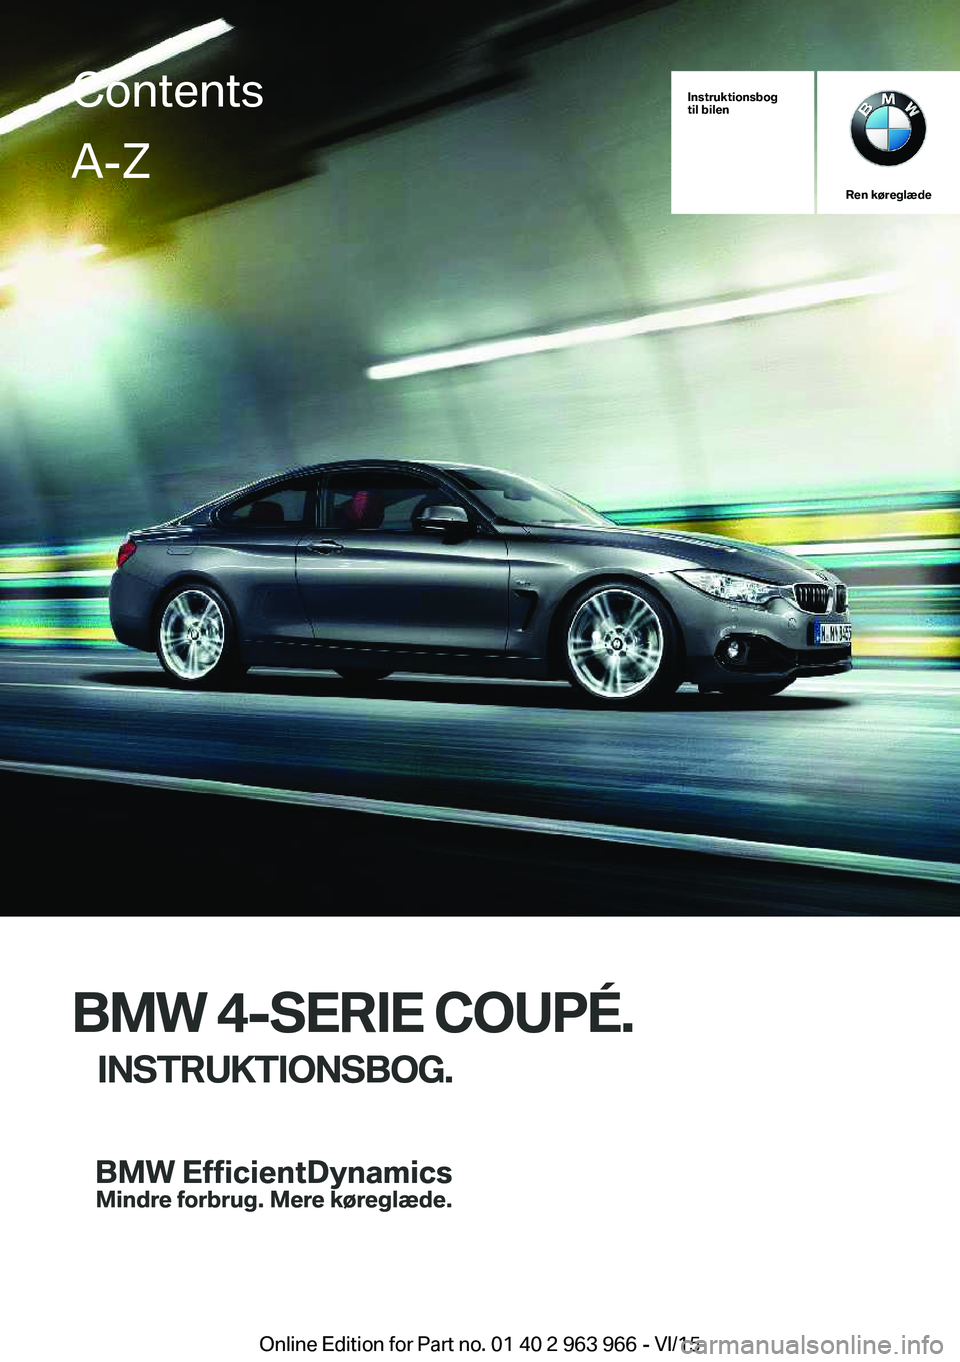 BMW 4 SERIES COUPE 2016  InstruktionsbØger (in Danish) Instruktionsbog
til bilen
Ren køreglæde
BMW 4-SERIE COUPÉ.
INSTRUKTIONSBOG.
ContentsA-Z
Online Edition for Part no. 01 40 2 963 966 - VI/15   